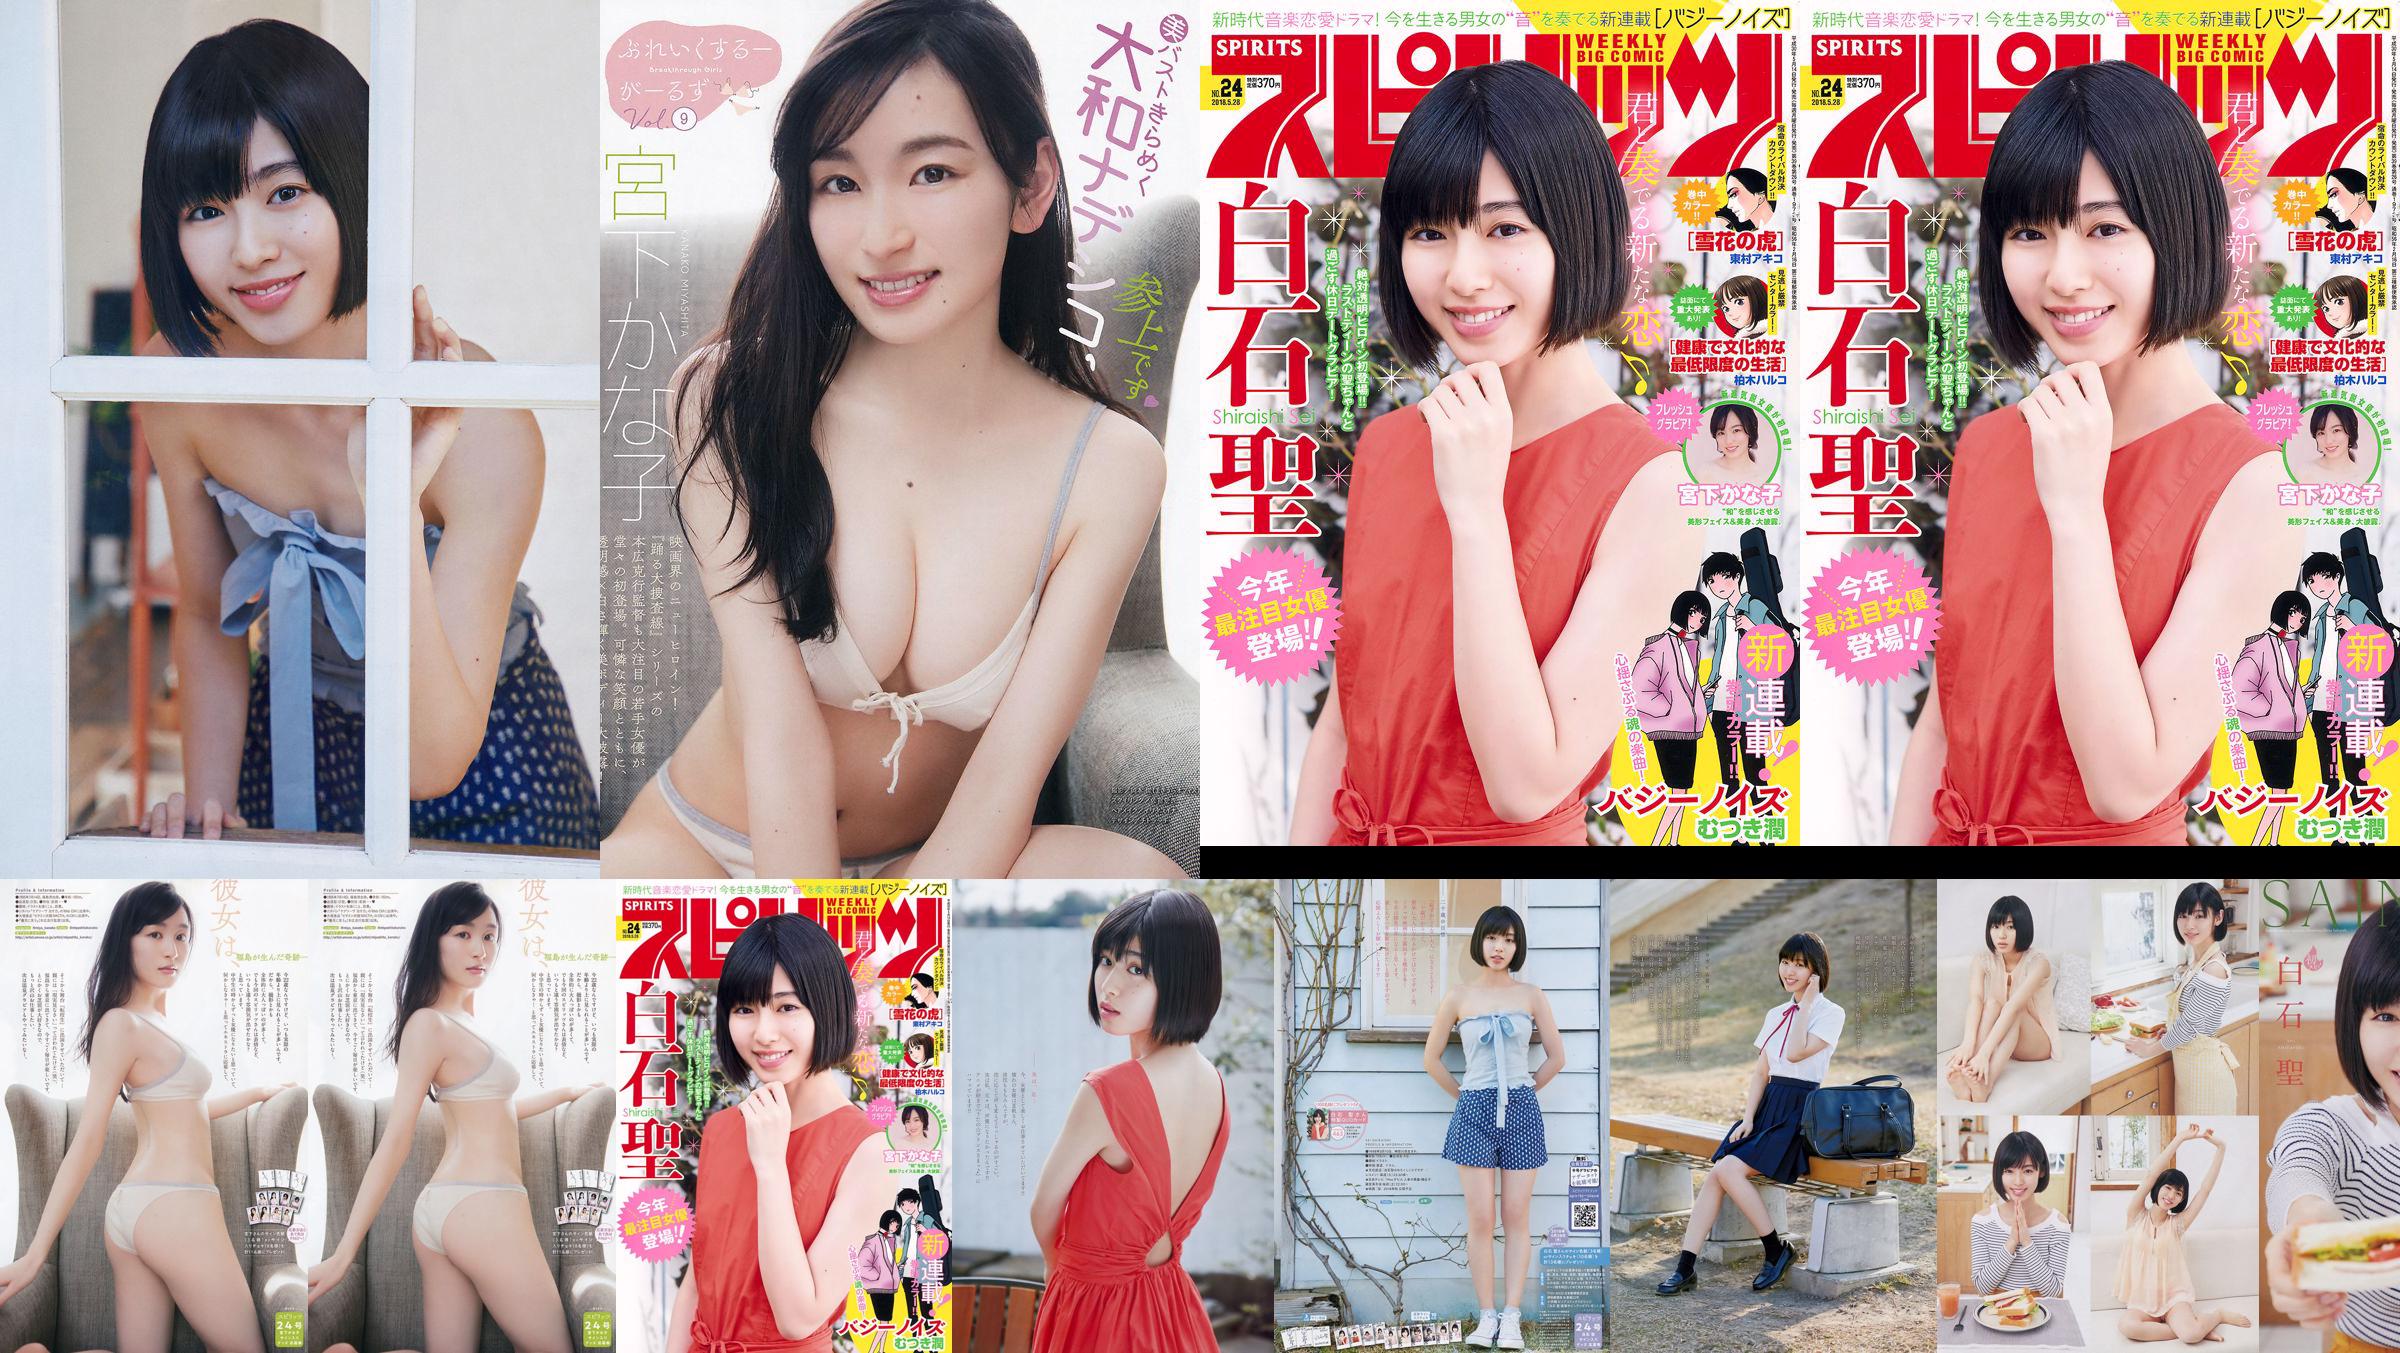 Юрия Кизаки Нана Окада AKB48 Under Girls [Weekly Young Jump] 2015 № 36-37 Фото No.5c659c Страница 4